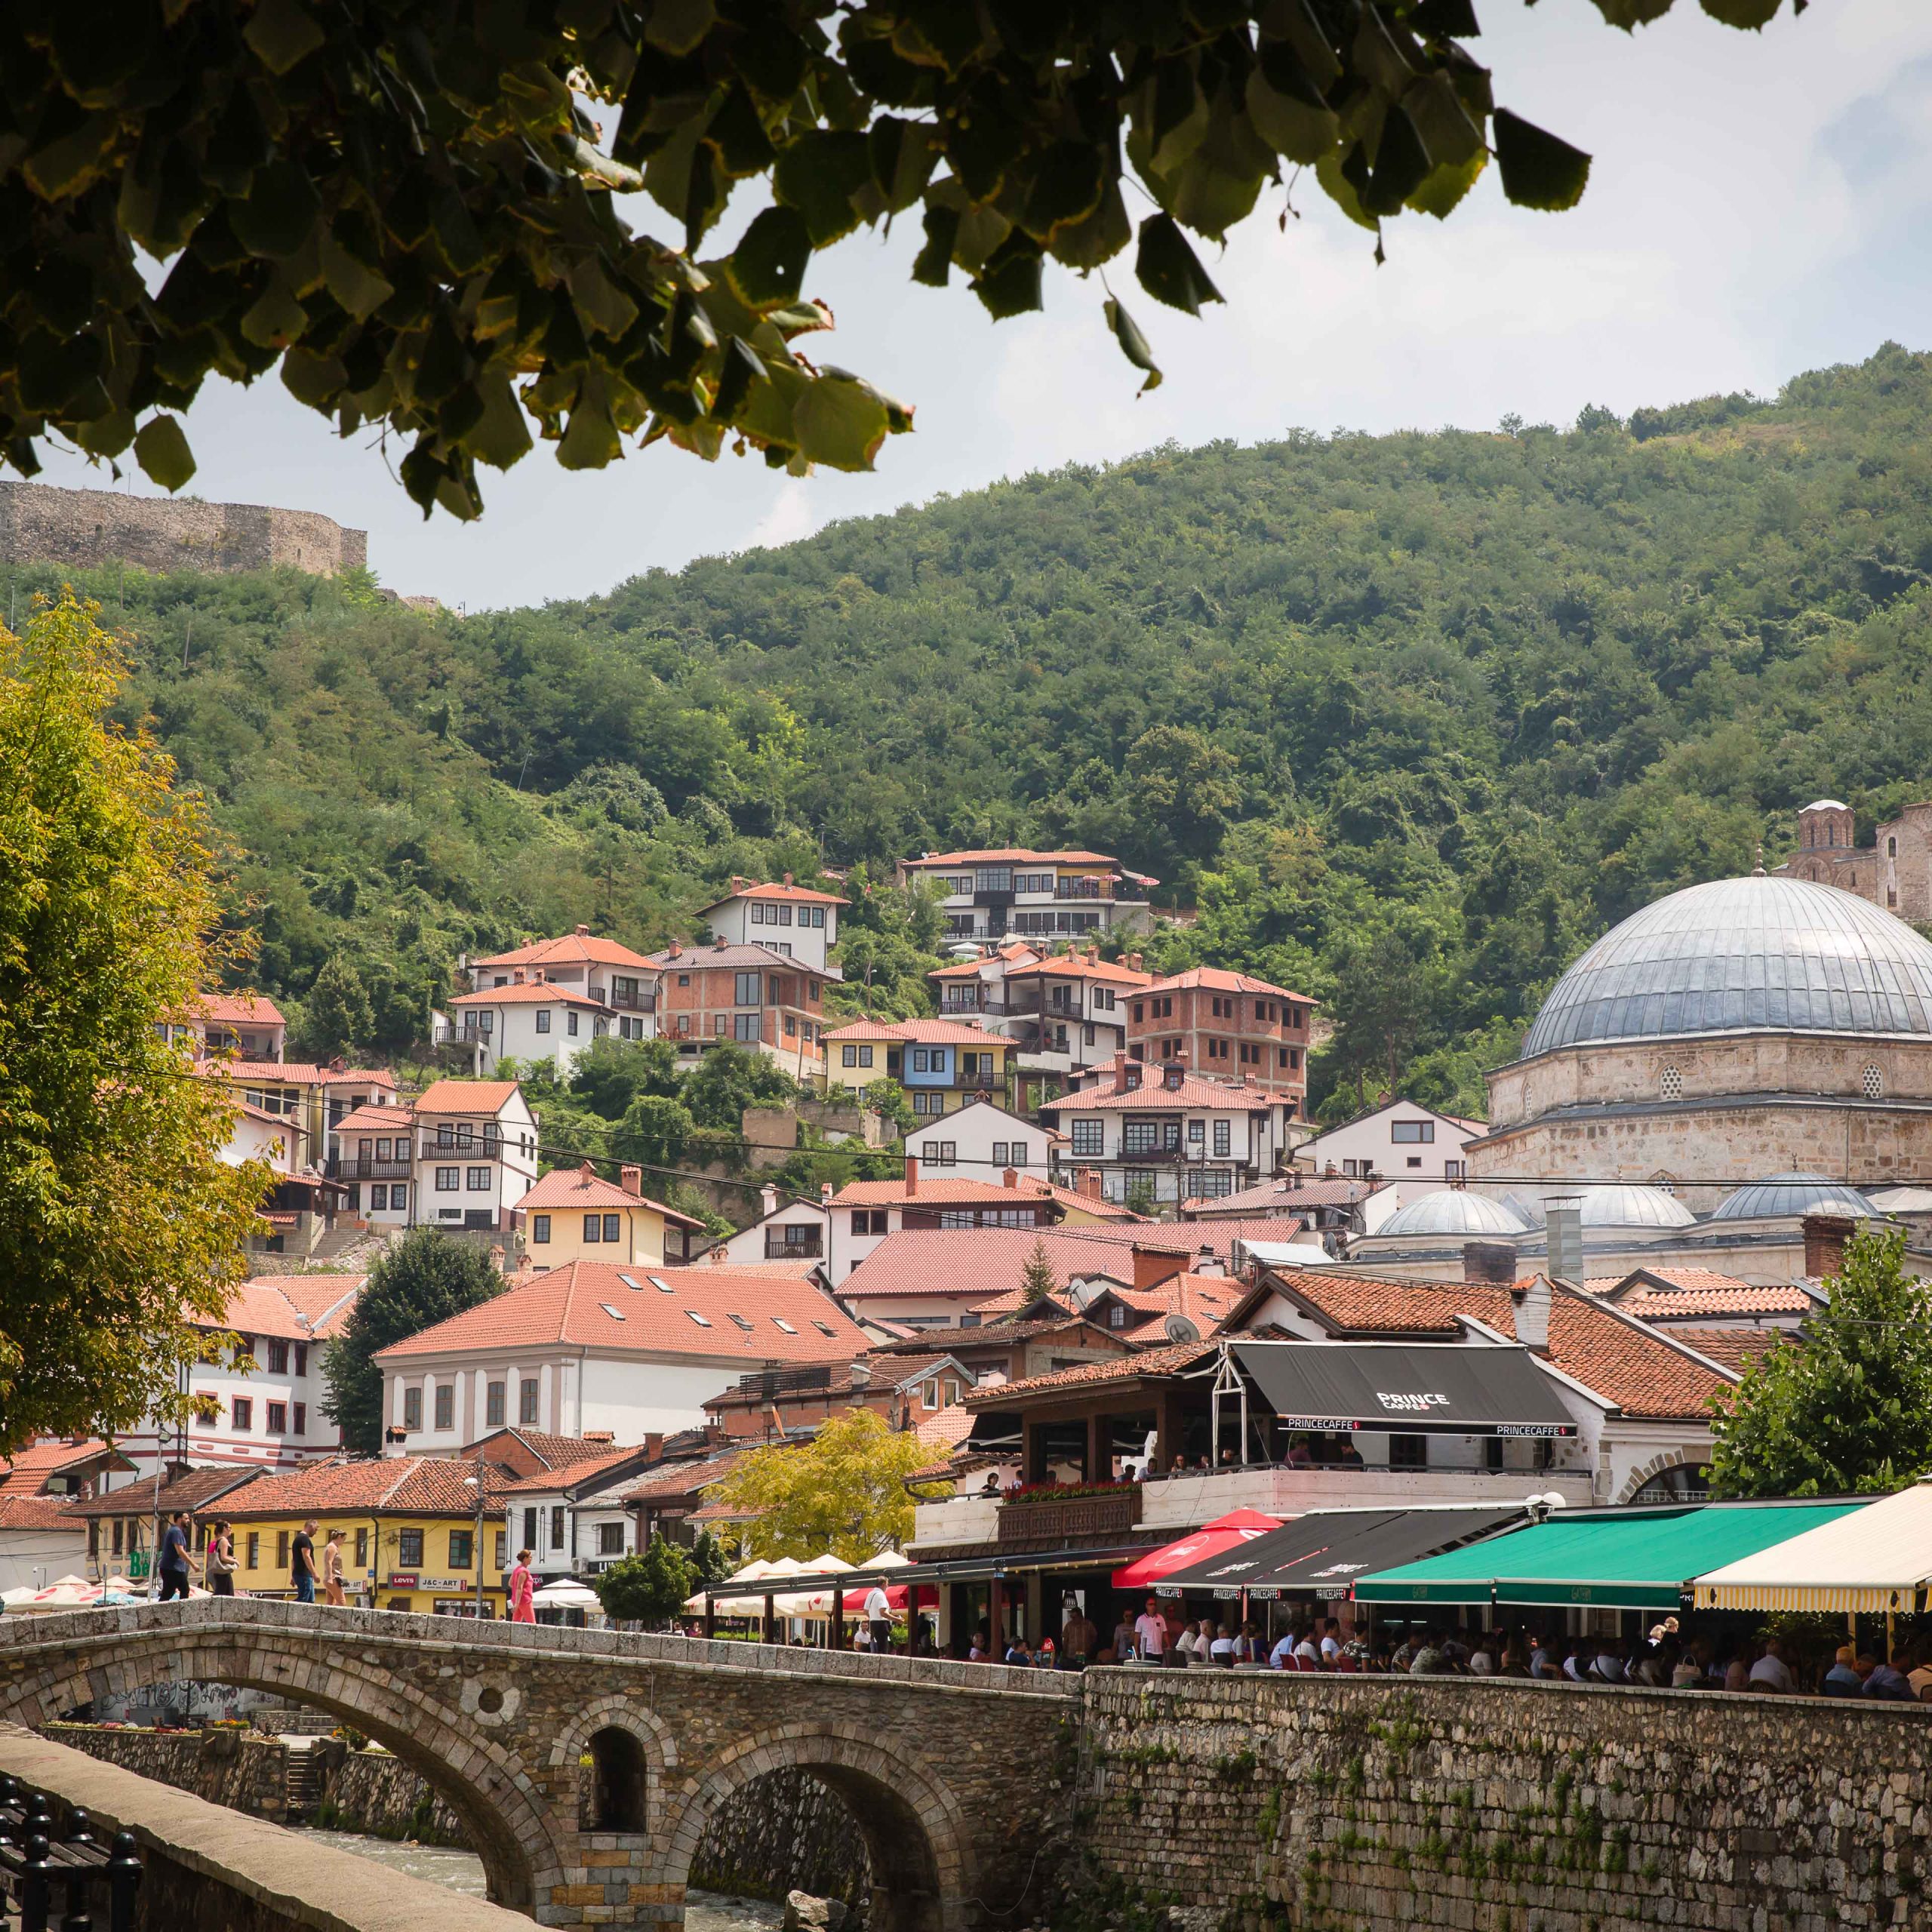 Day 3 Skopje – Pristina (Kosovo) – Prizren